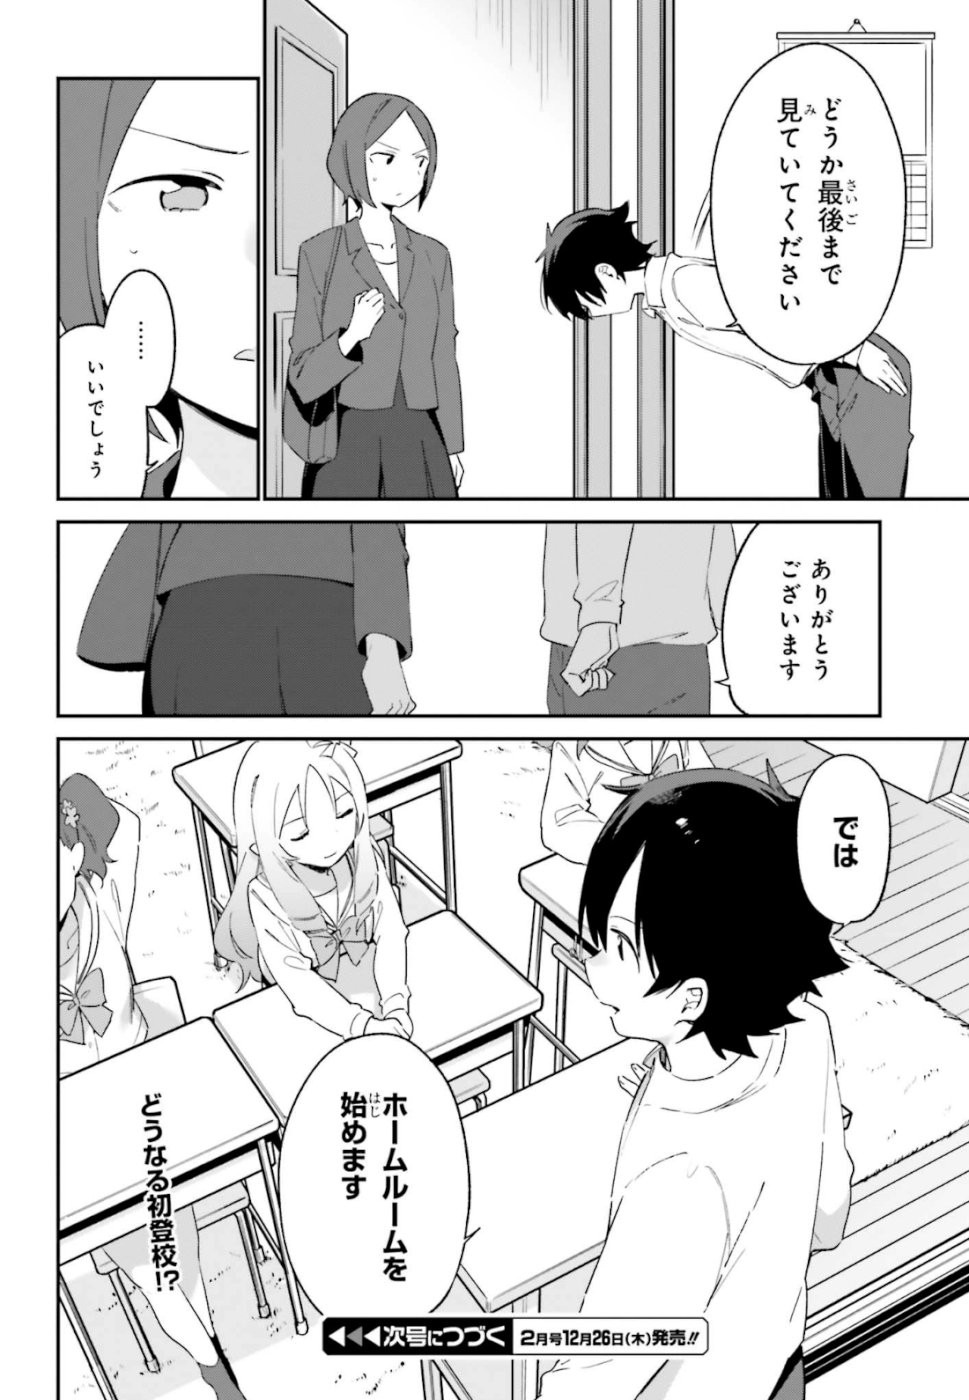 Ero Manga Sensei - Chapter 63 - Page 18